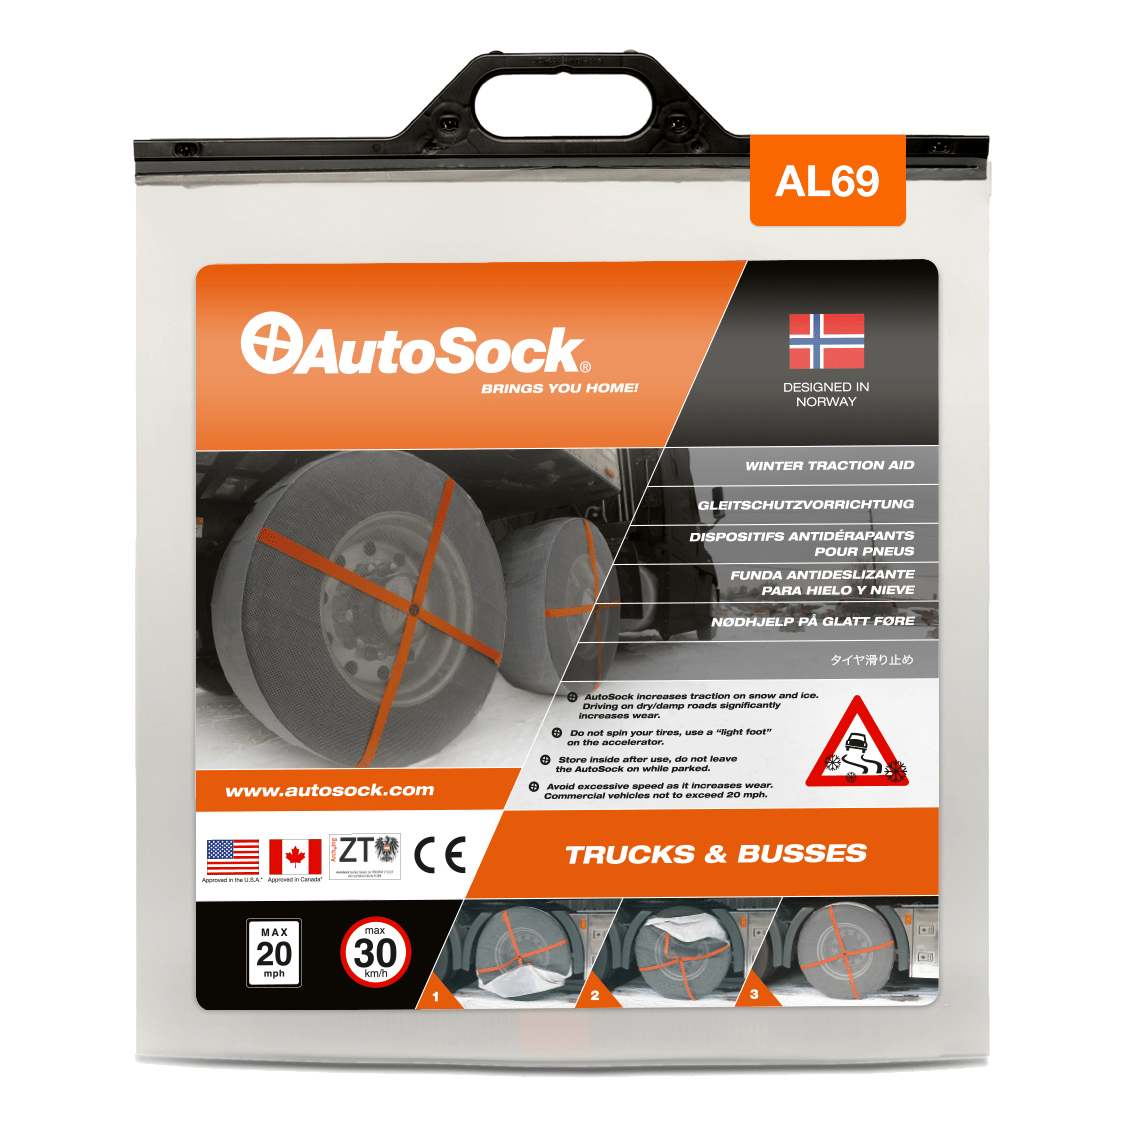 トラック用オートソック Autosock AL 69 AL69 – AutoSock JP